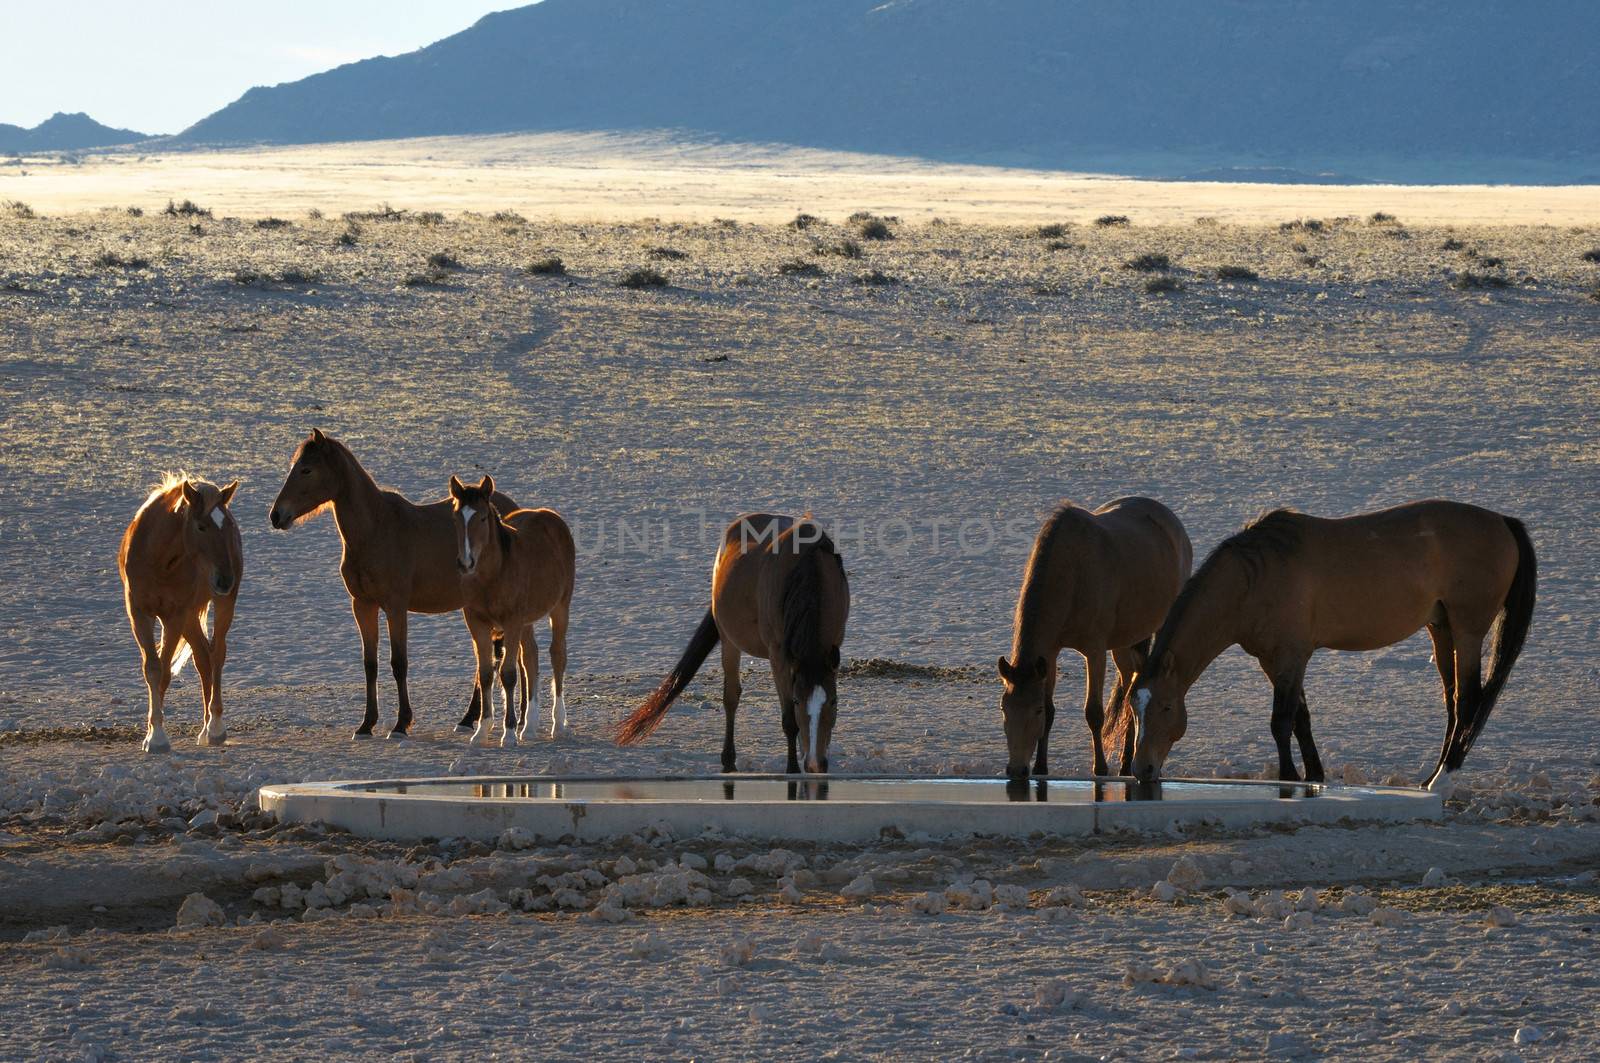 Wild Horses of the Namib at Garub near Aus, Namibia.